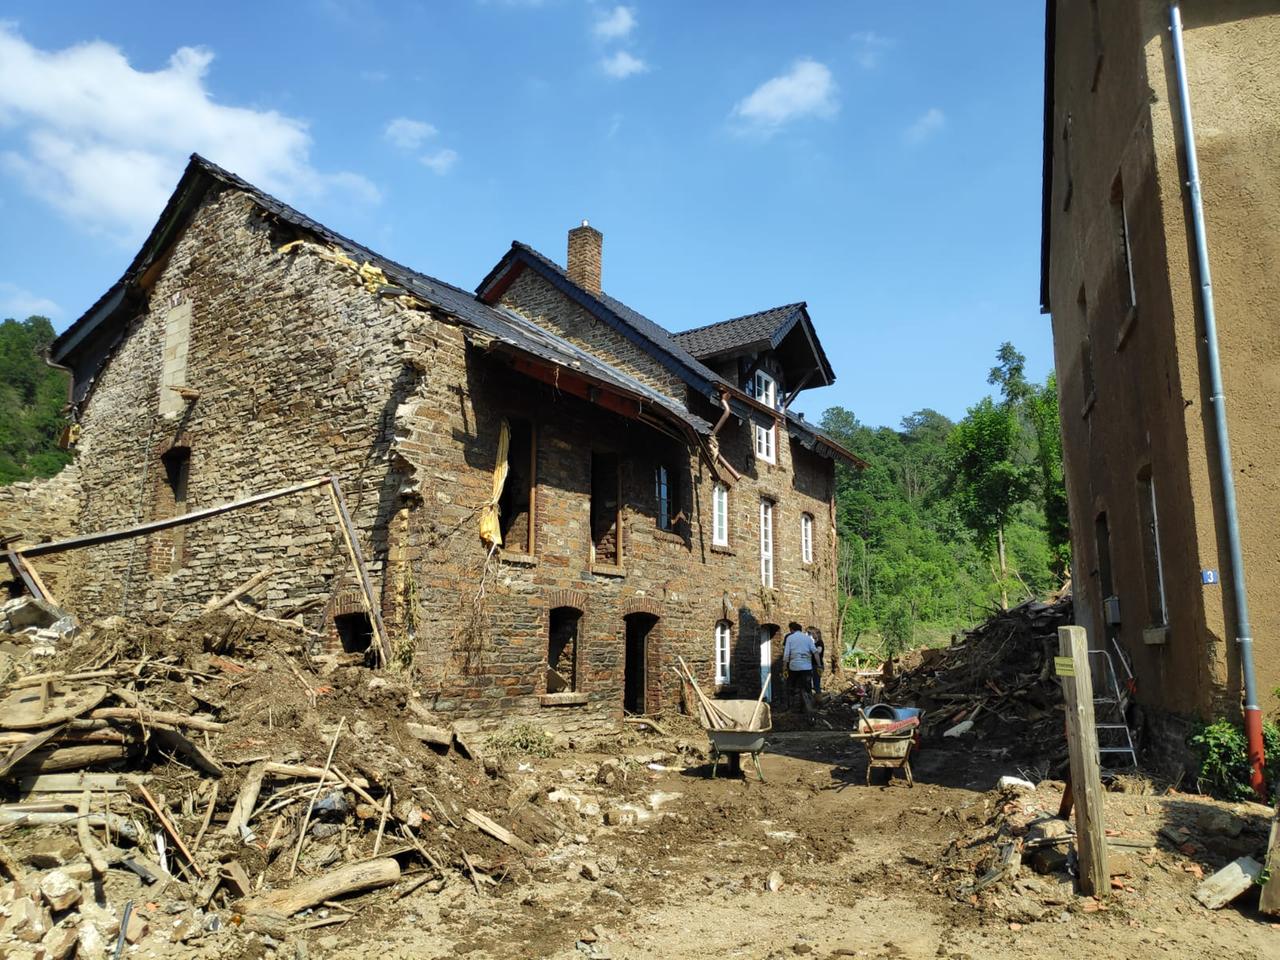 Vor einem alten Backsteinhaus liegen Schutt und Trümmer, eine Menschen und Schubkarren stehen davor.